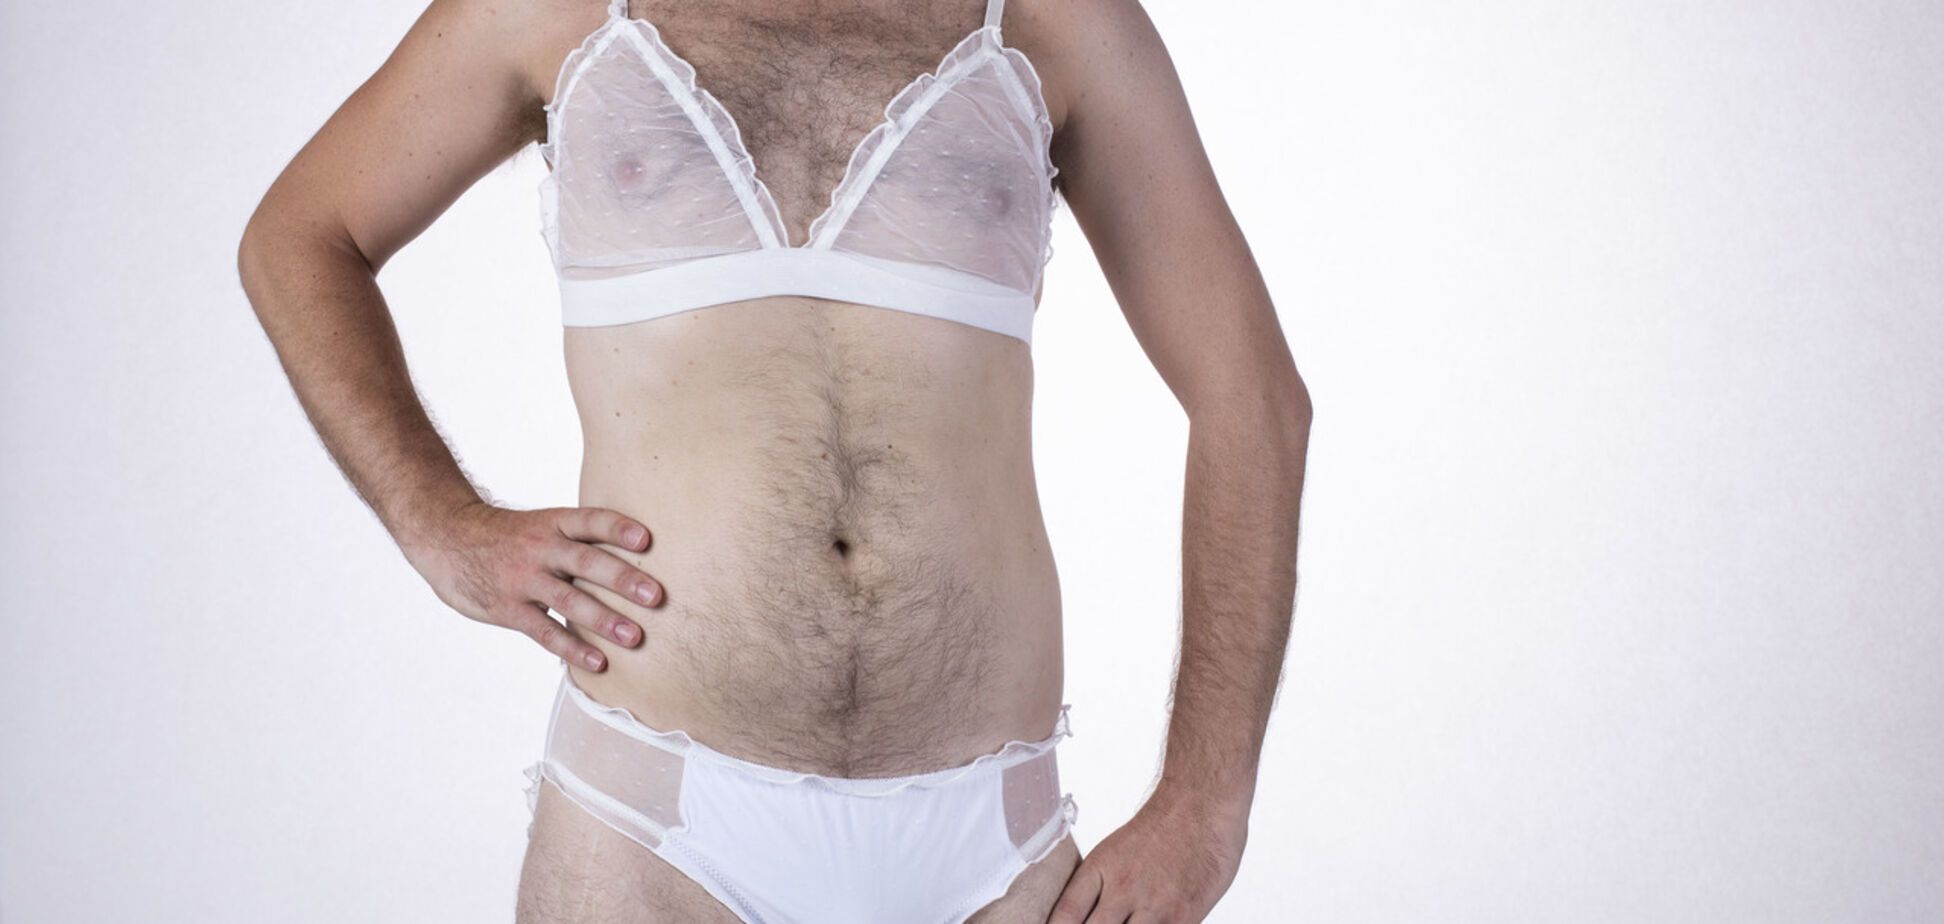 Ажурні ліфчики і боді: в Австралії здивували колекцією еротичної білизни для чоловіків. Фото 18+